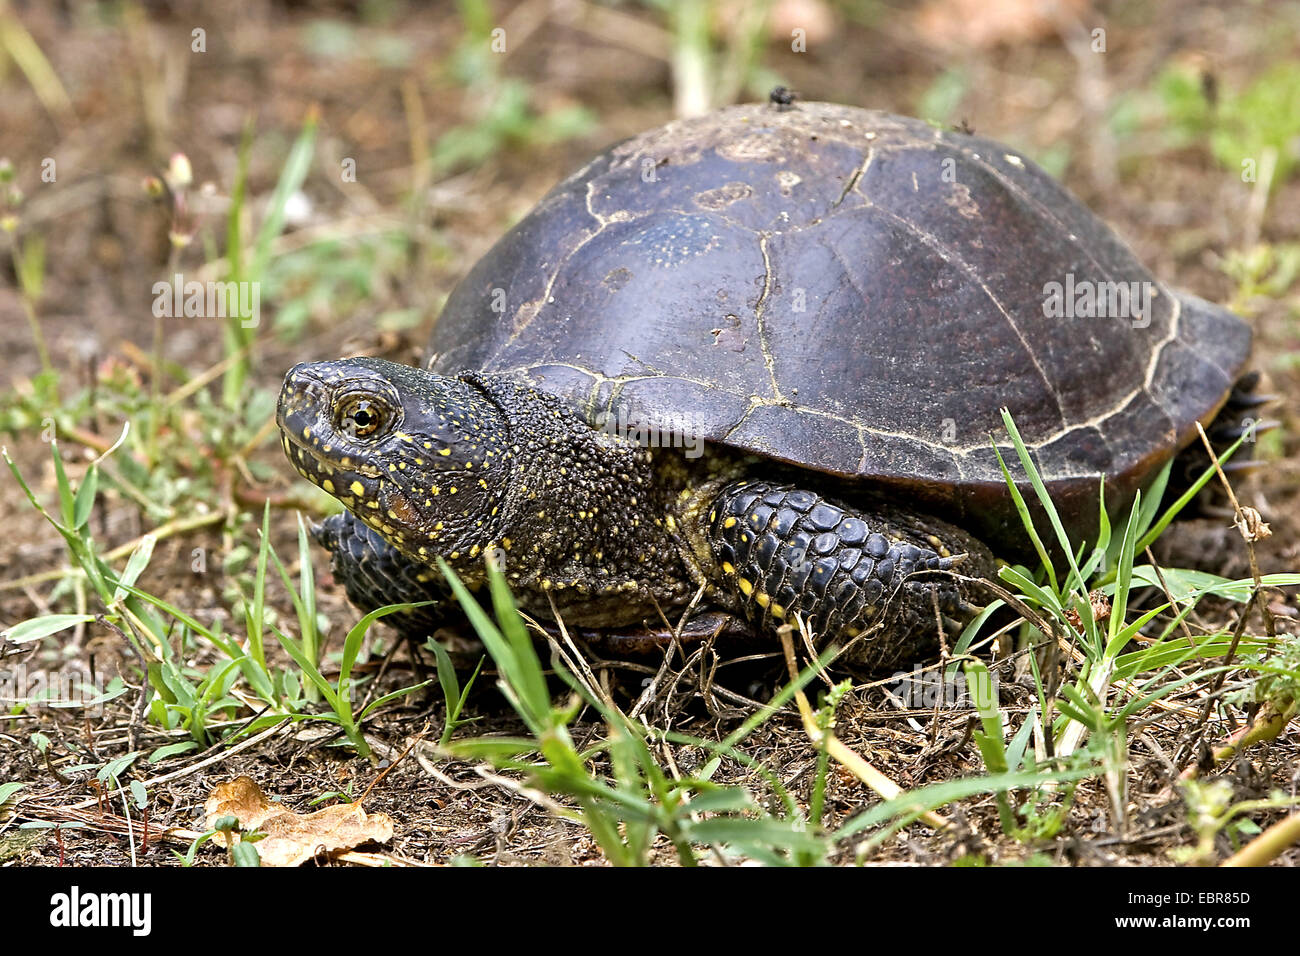 European pond terrapin, European pond turtle, European pond tortoise (Emys orbicularis), on land, Germany Stock Photo